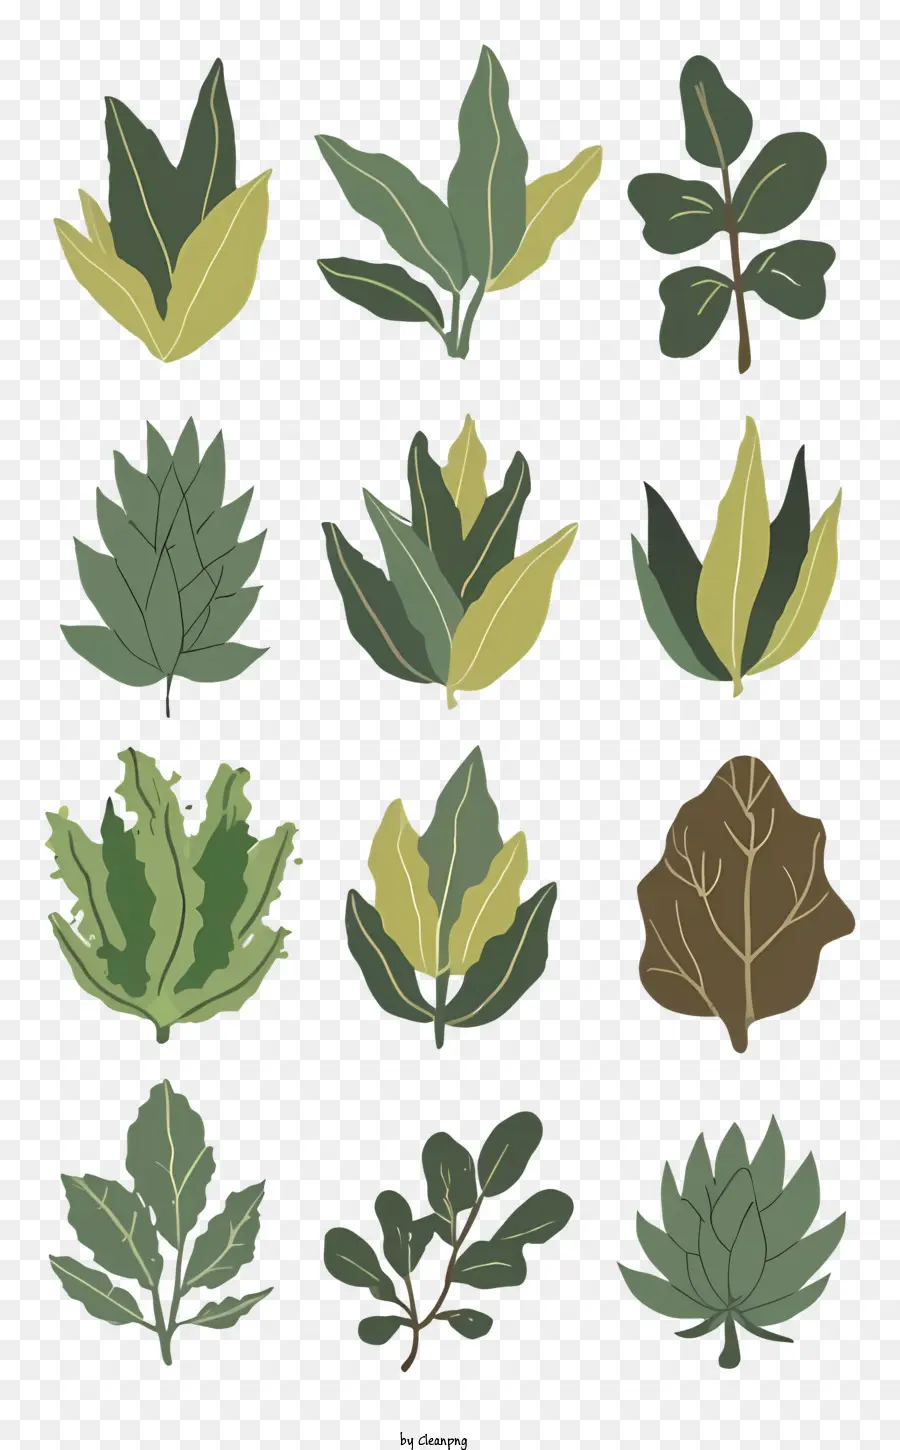 Blätter Arten von Blättern Blattformen Blattfarben stilisierte Blätter - Verschiedene Blatttypen, die auf stilisierte, vielfältige Arten dargestellt werden